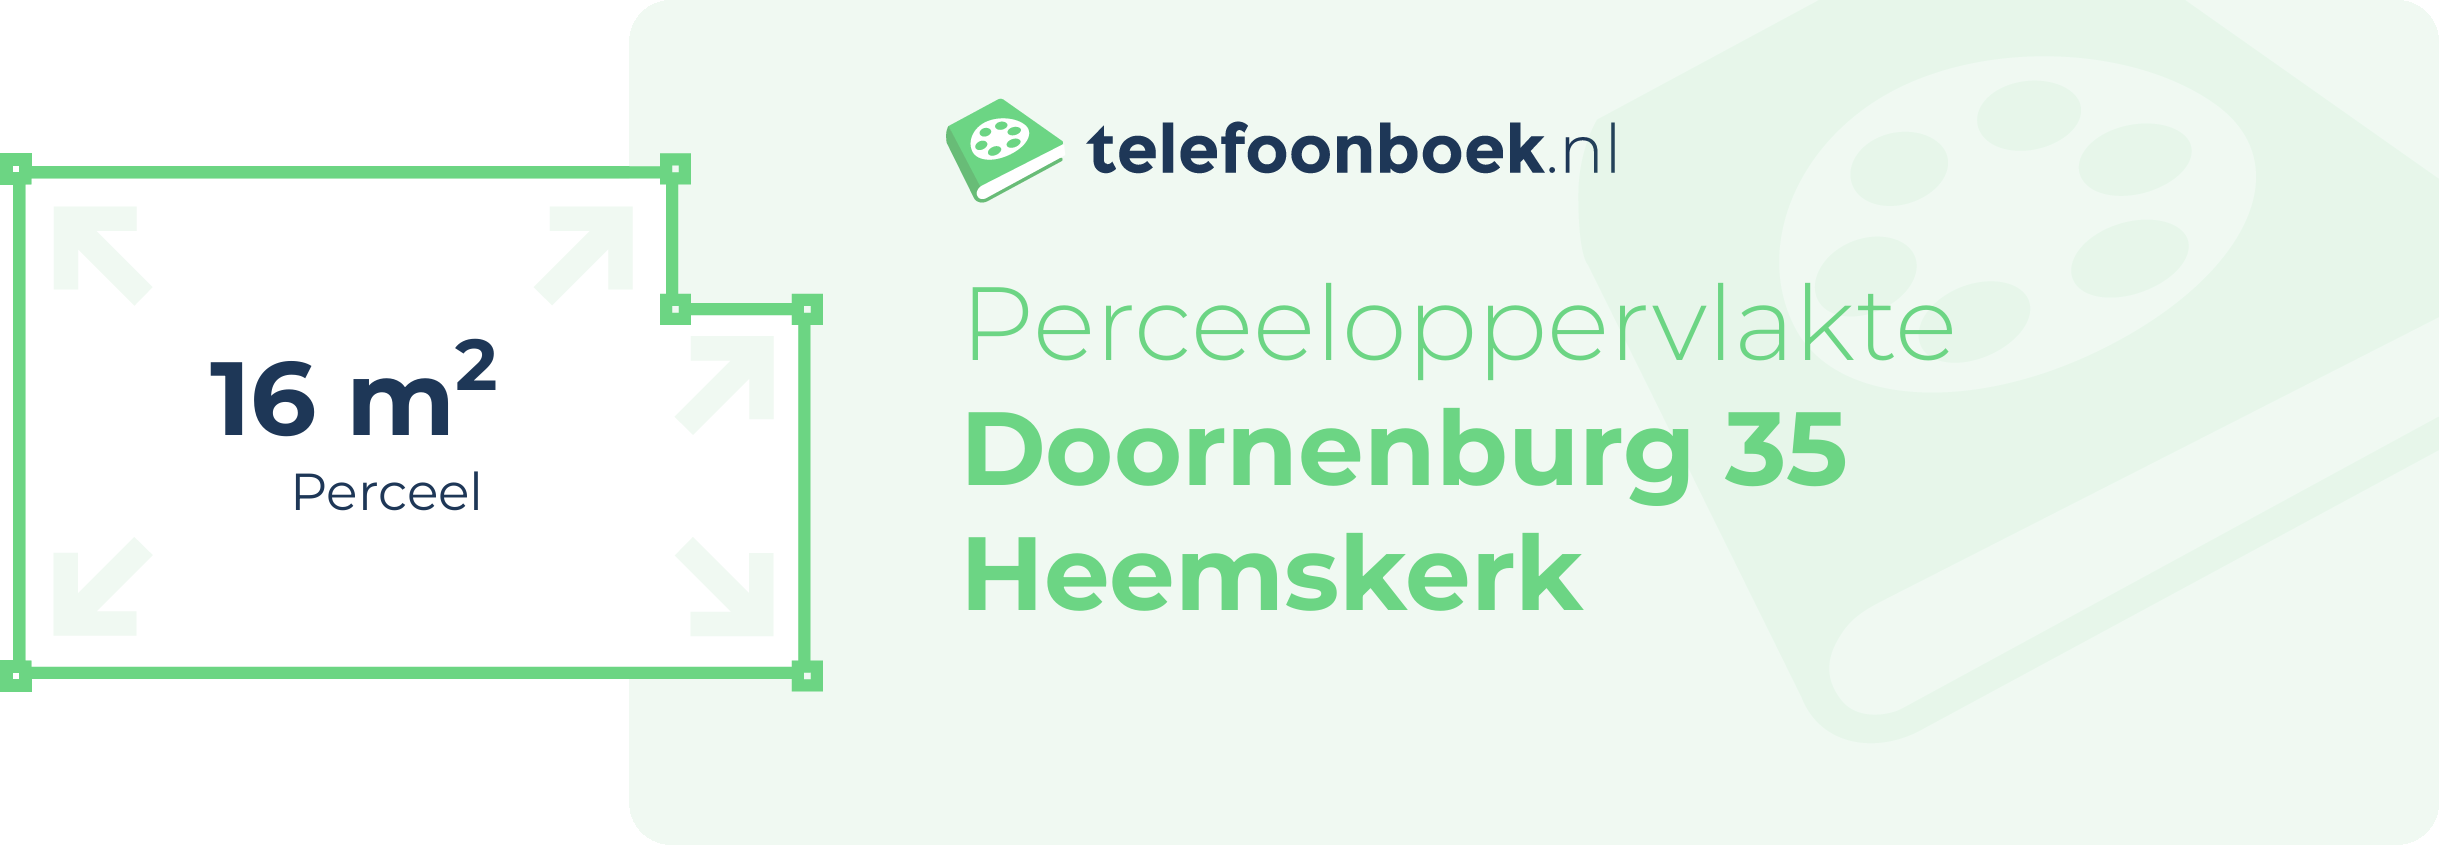 Perceeloppervlakte Doornenburg 35 Heemskerk